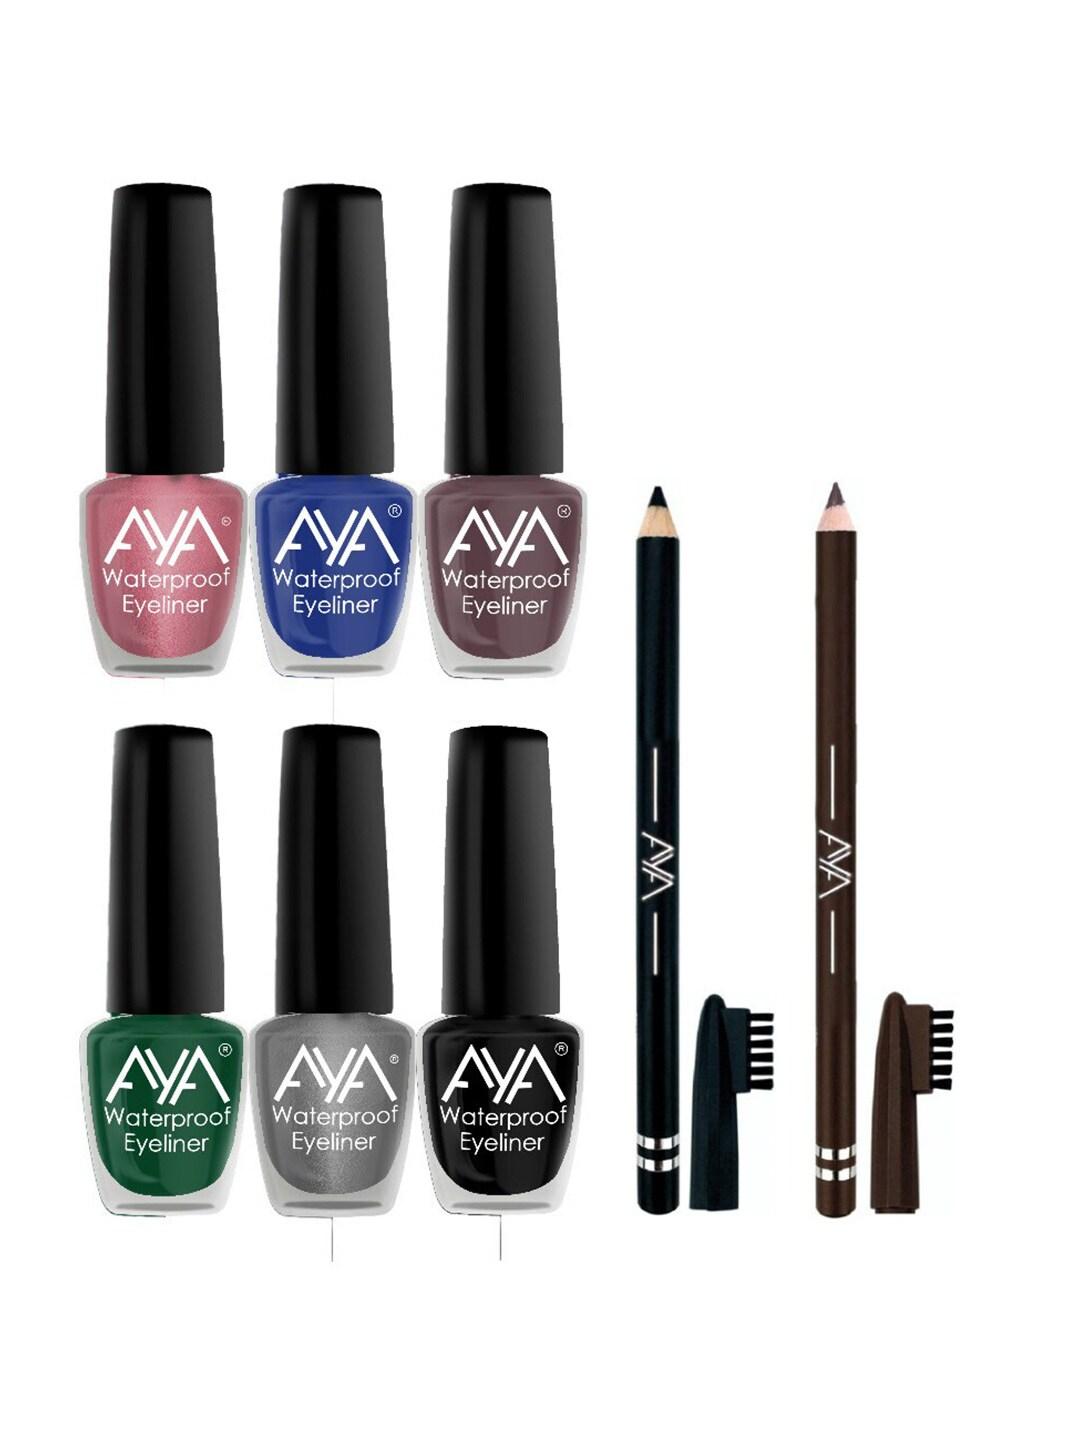 AYA Set of 6 Waterproof Eyeliner - 5ml each & 2 Eyebrow Pencil - 1.4g each